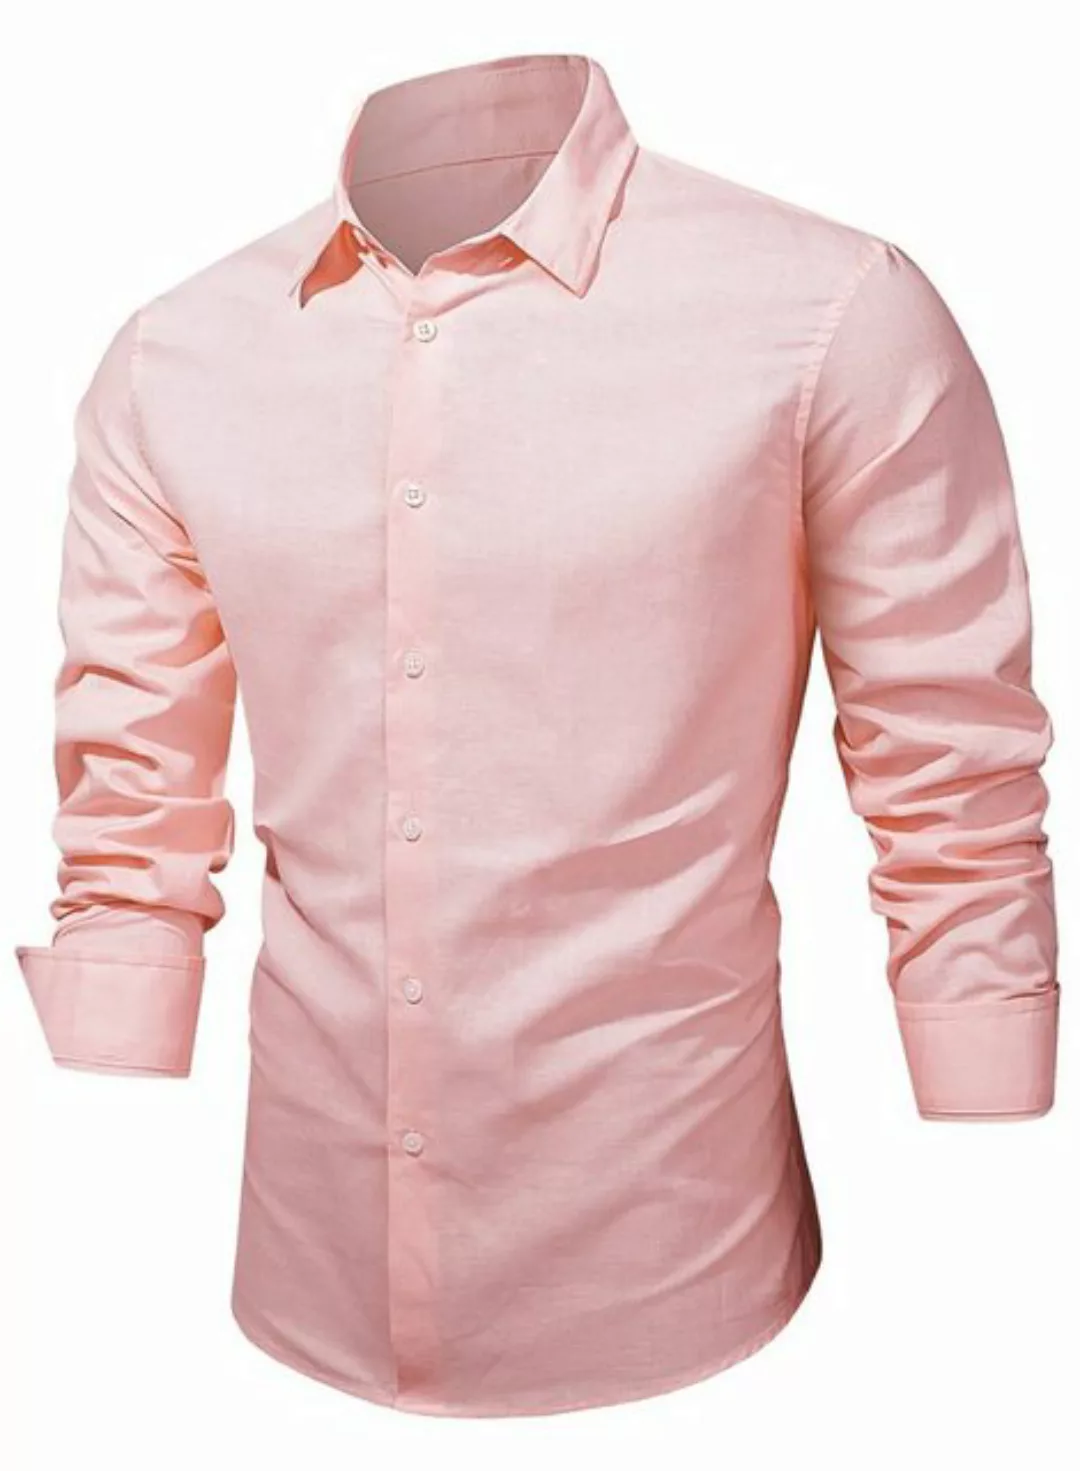 JMIERR Leinenhemd Langarm Hemden Shirts Casual Freizeithemd Baumwolle Stehk günstig online kaufen